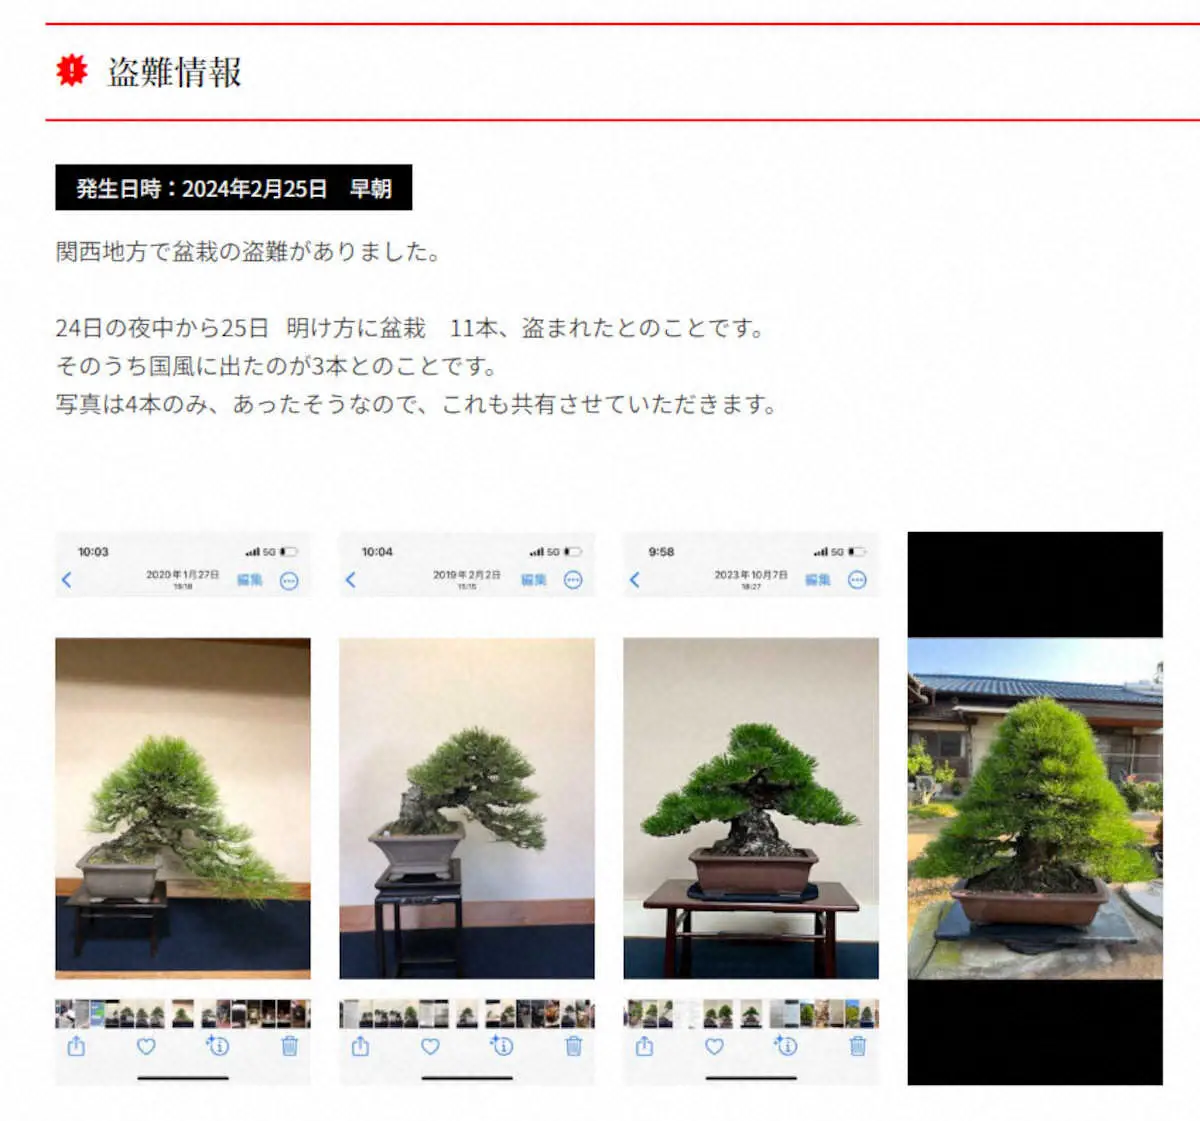 日本盆栽協同組合が公式サイトに掲載している盗難情報